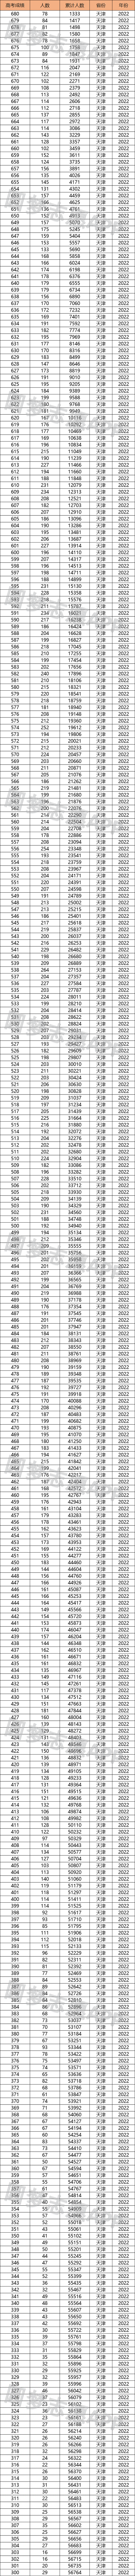 2022年天津高考成绩位次表-天津一分一段统计表2022